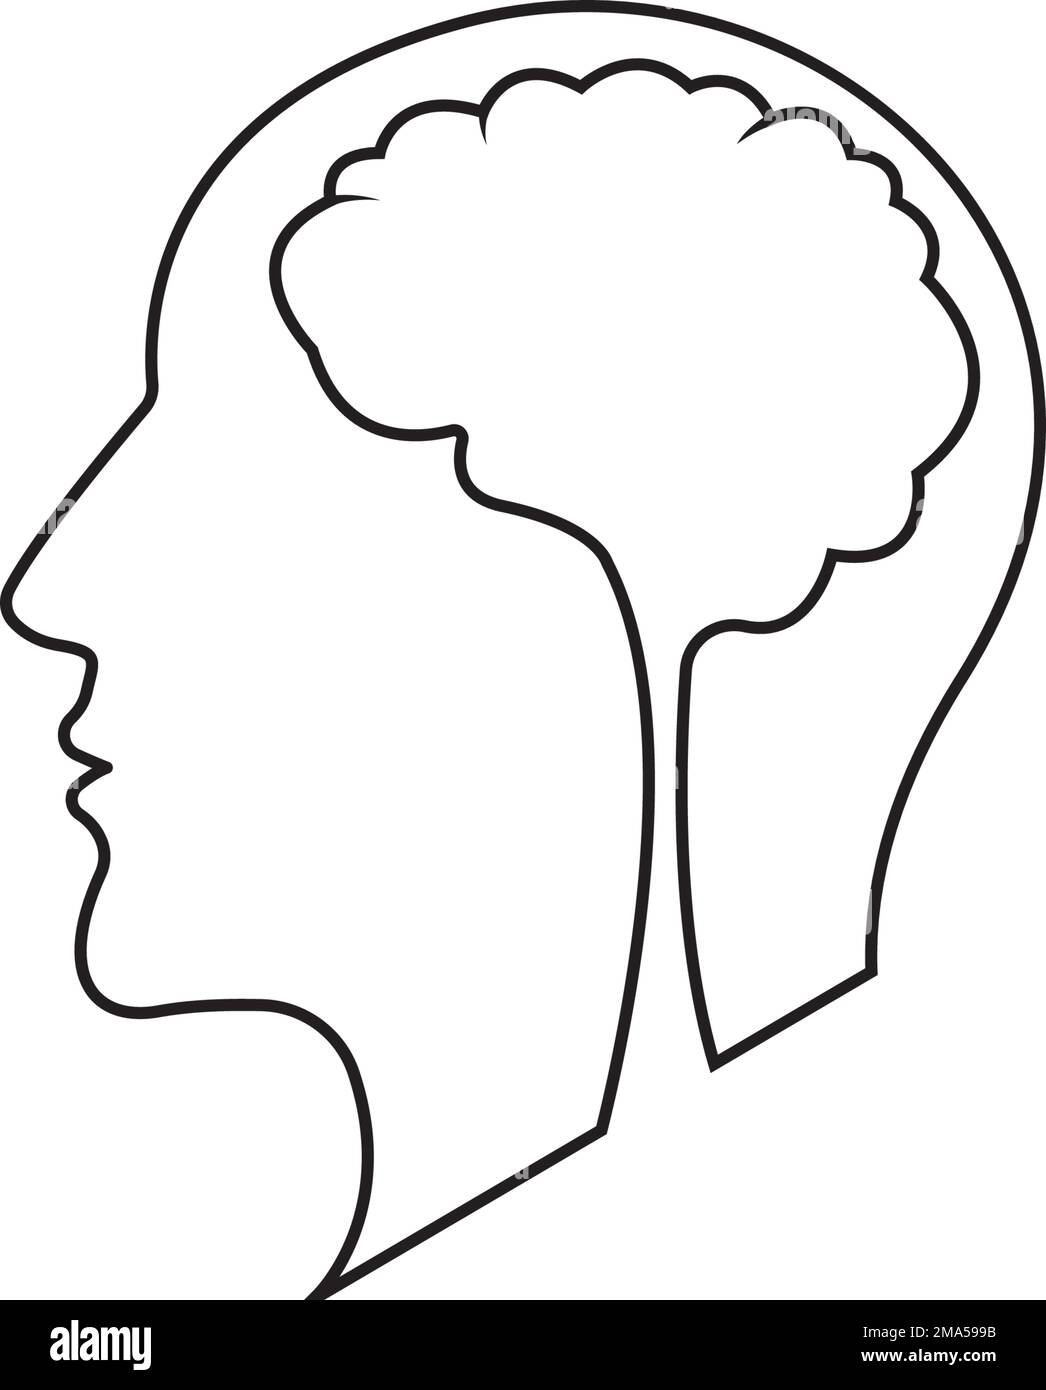 Disegno del logo di illustrazione vettoriale dell'icona del cervello umano Illustrazione Vettoriale